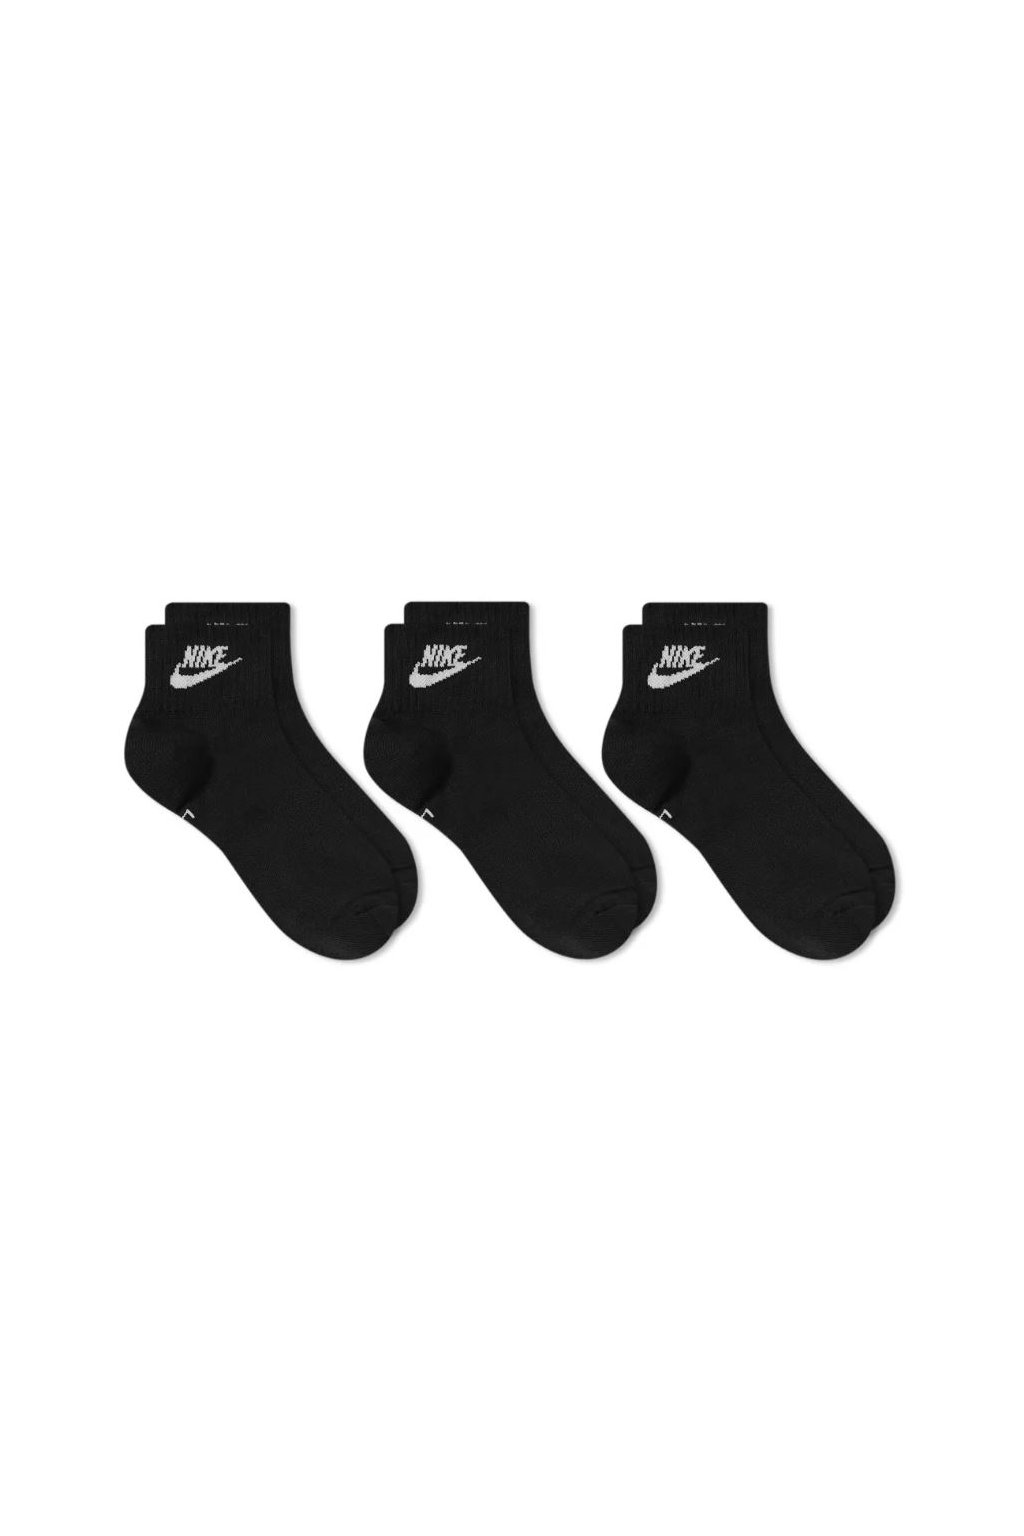 Nike ponožky Everyday Essential Ankle - Beldasport.cz